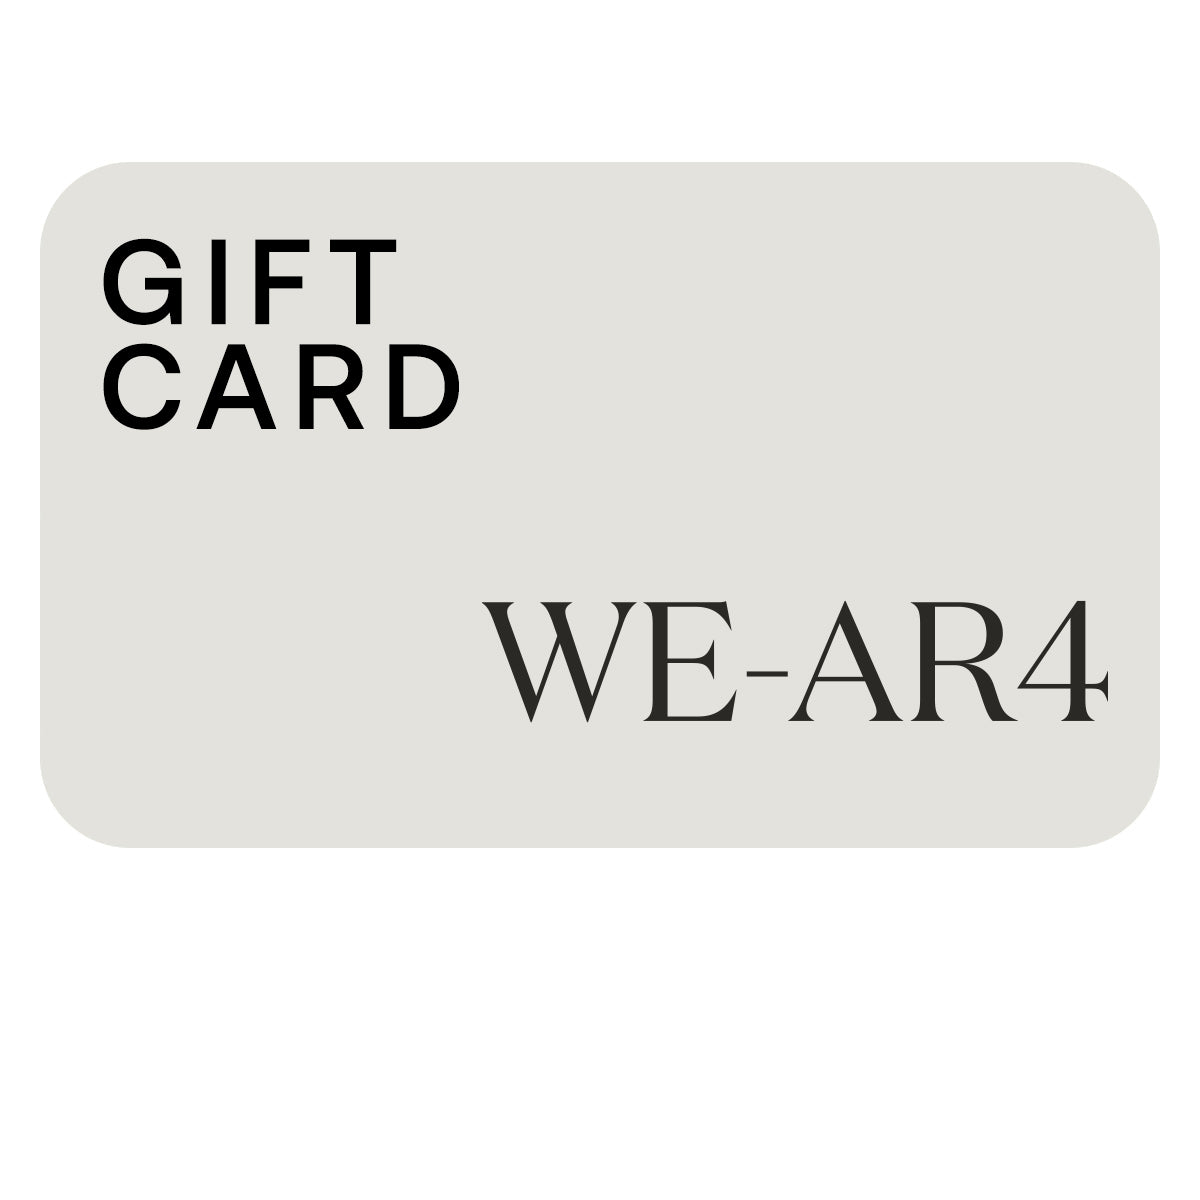 WE-AR4 Gift Card